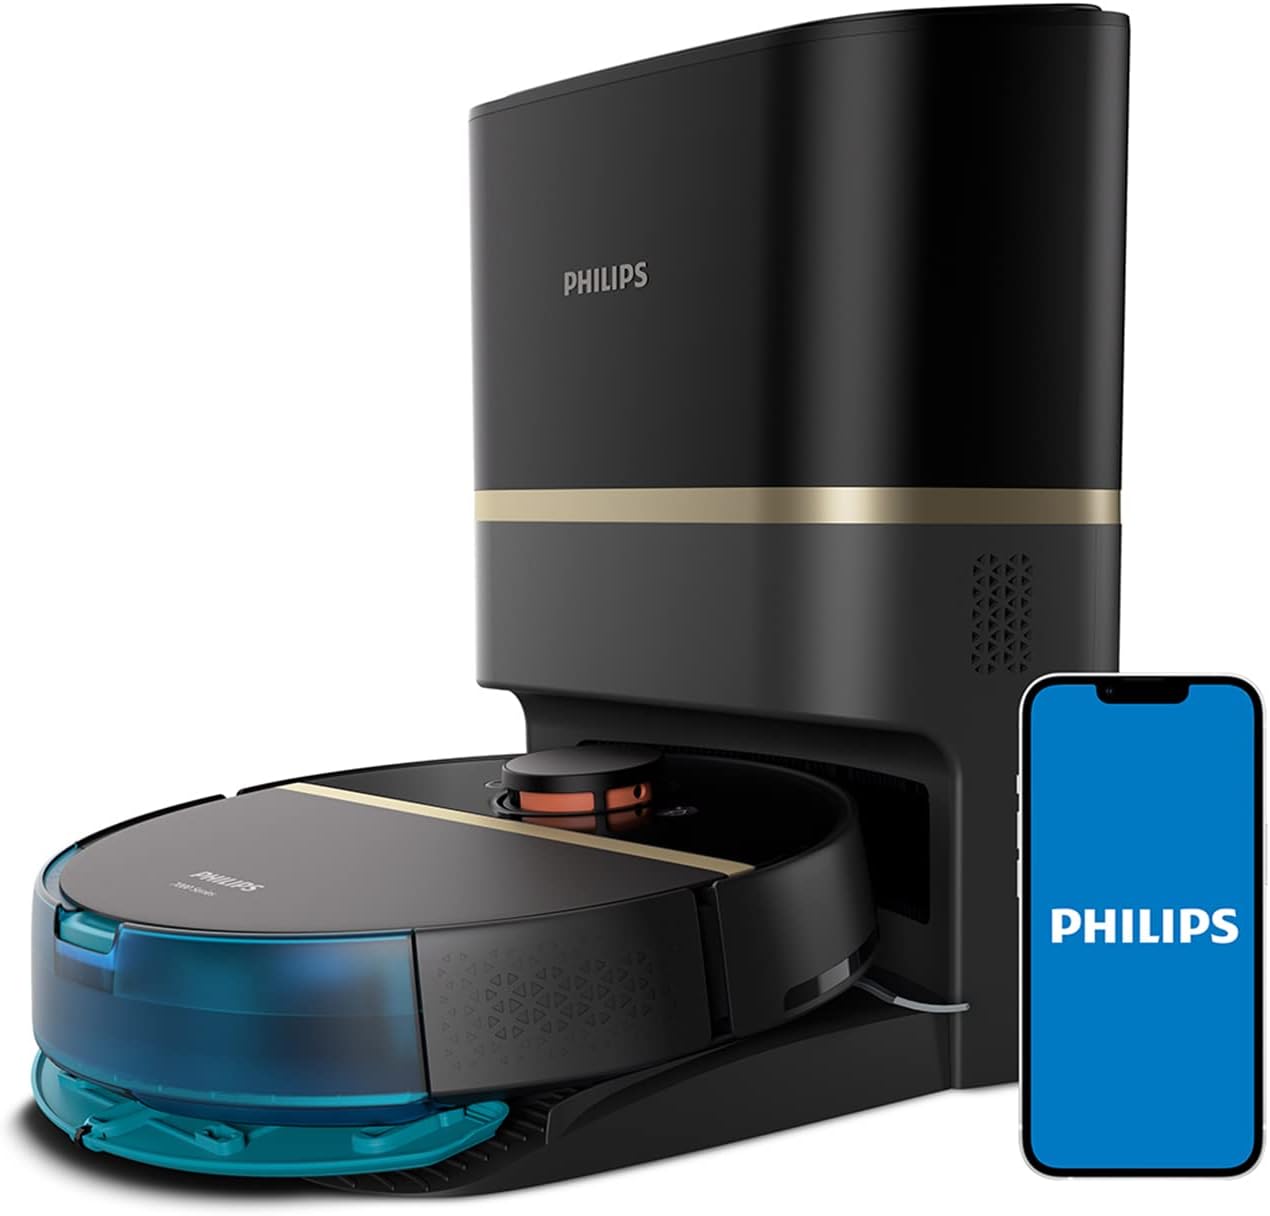 Philips Homerun 7000 vs Philips Homerun 3000